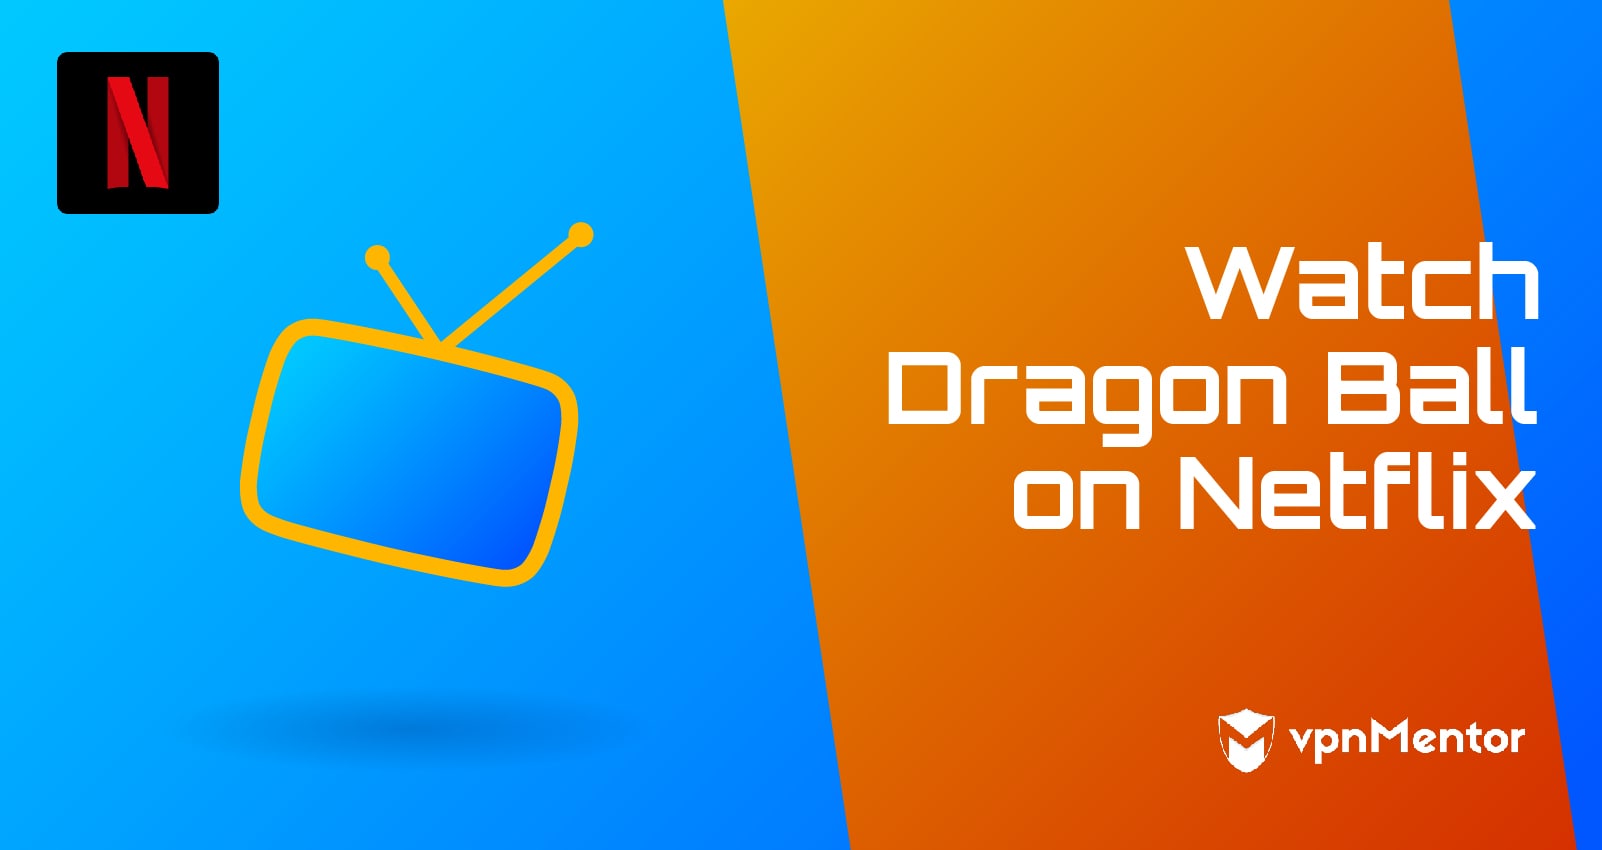 Dragon Ball Z Kai - streaming tv show online